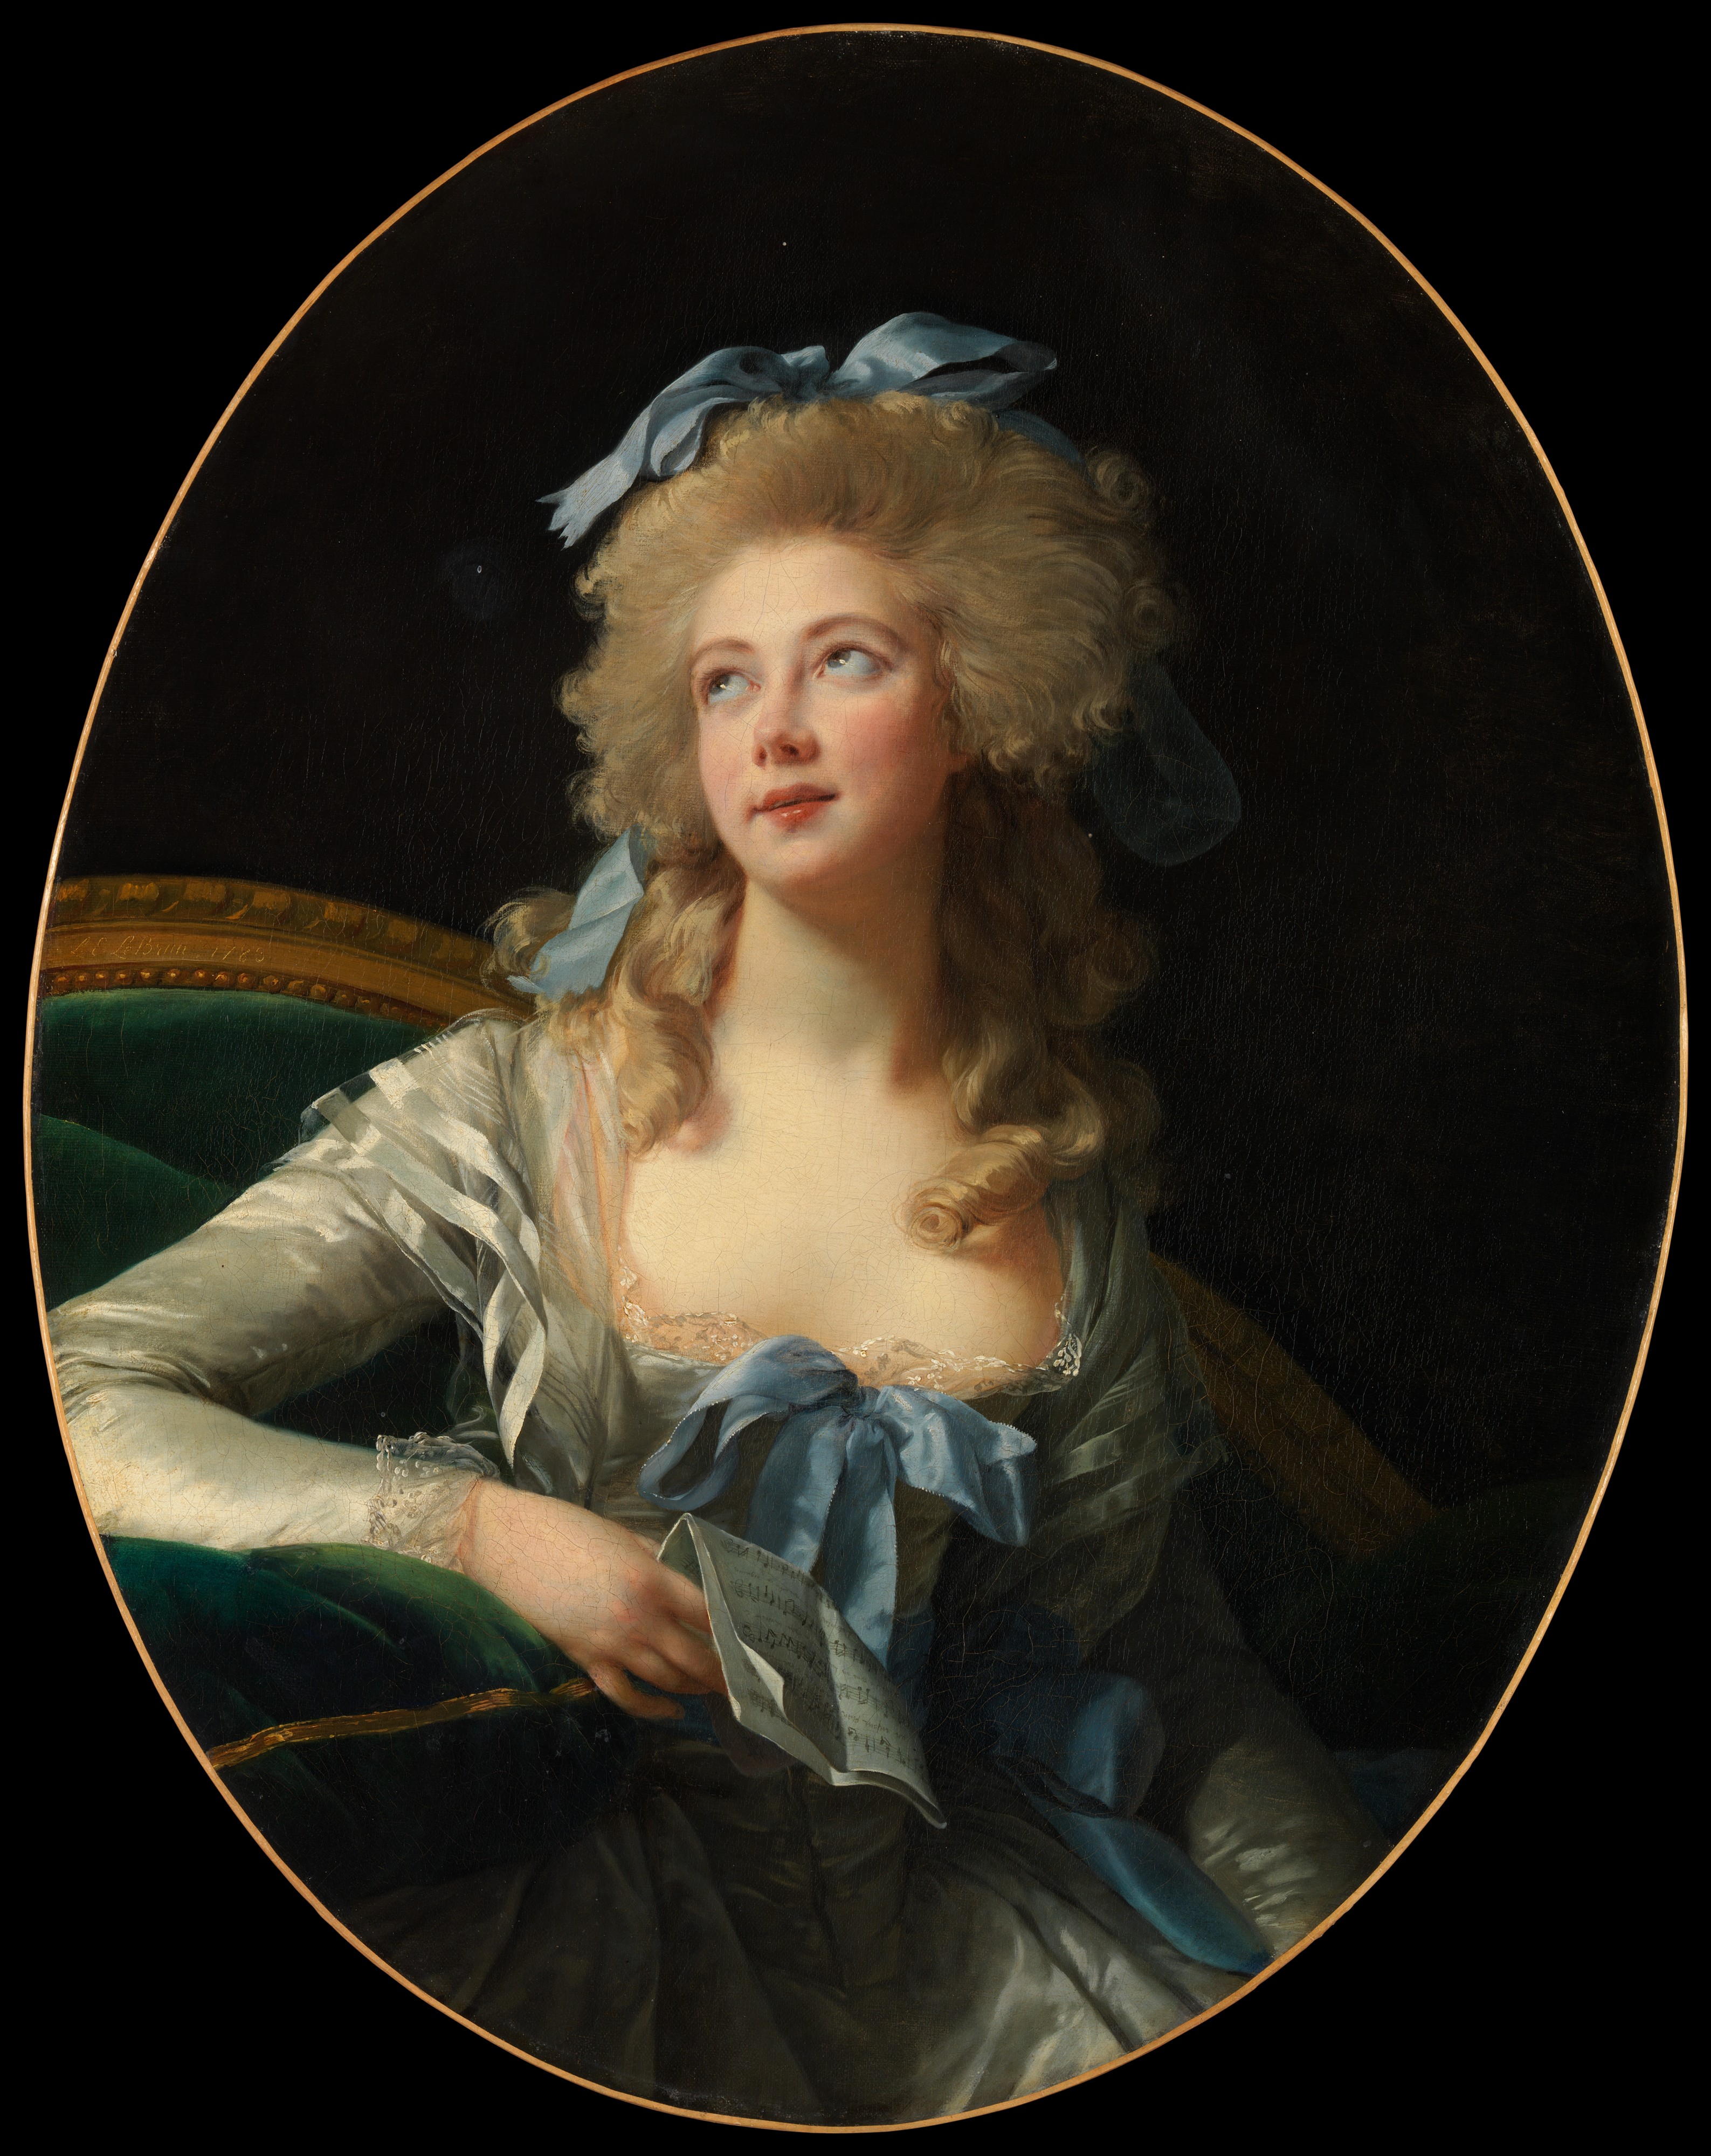 格蘭德夫人的畫像 (Christmas Catherine Vorlée) by Élisabeth Vigee Le Brun - 1783 - 92.1 x 72.4 厘米 